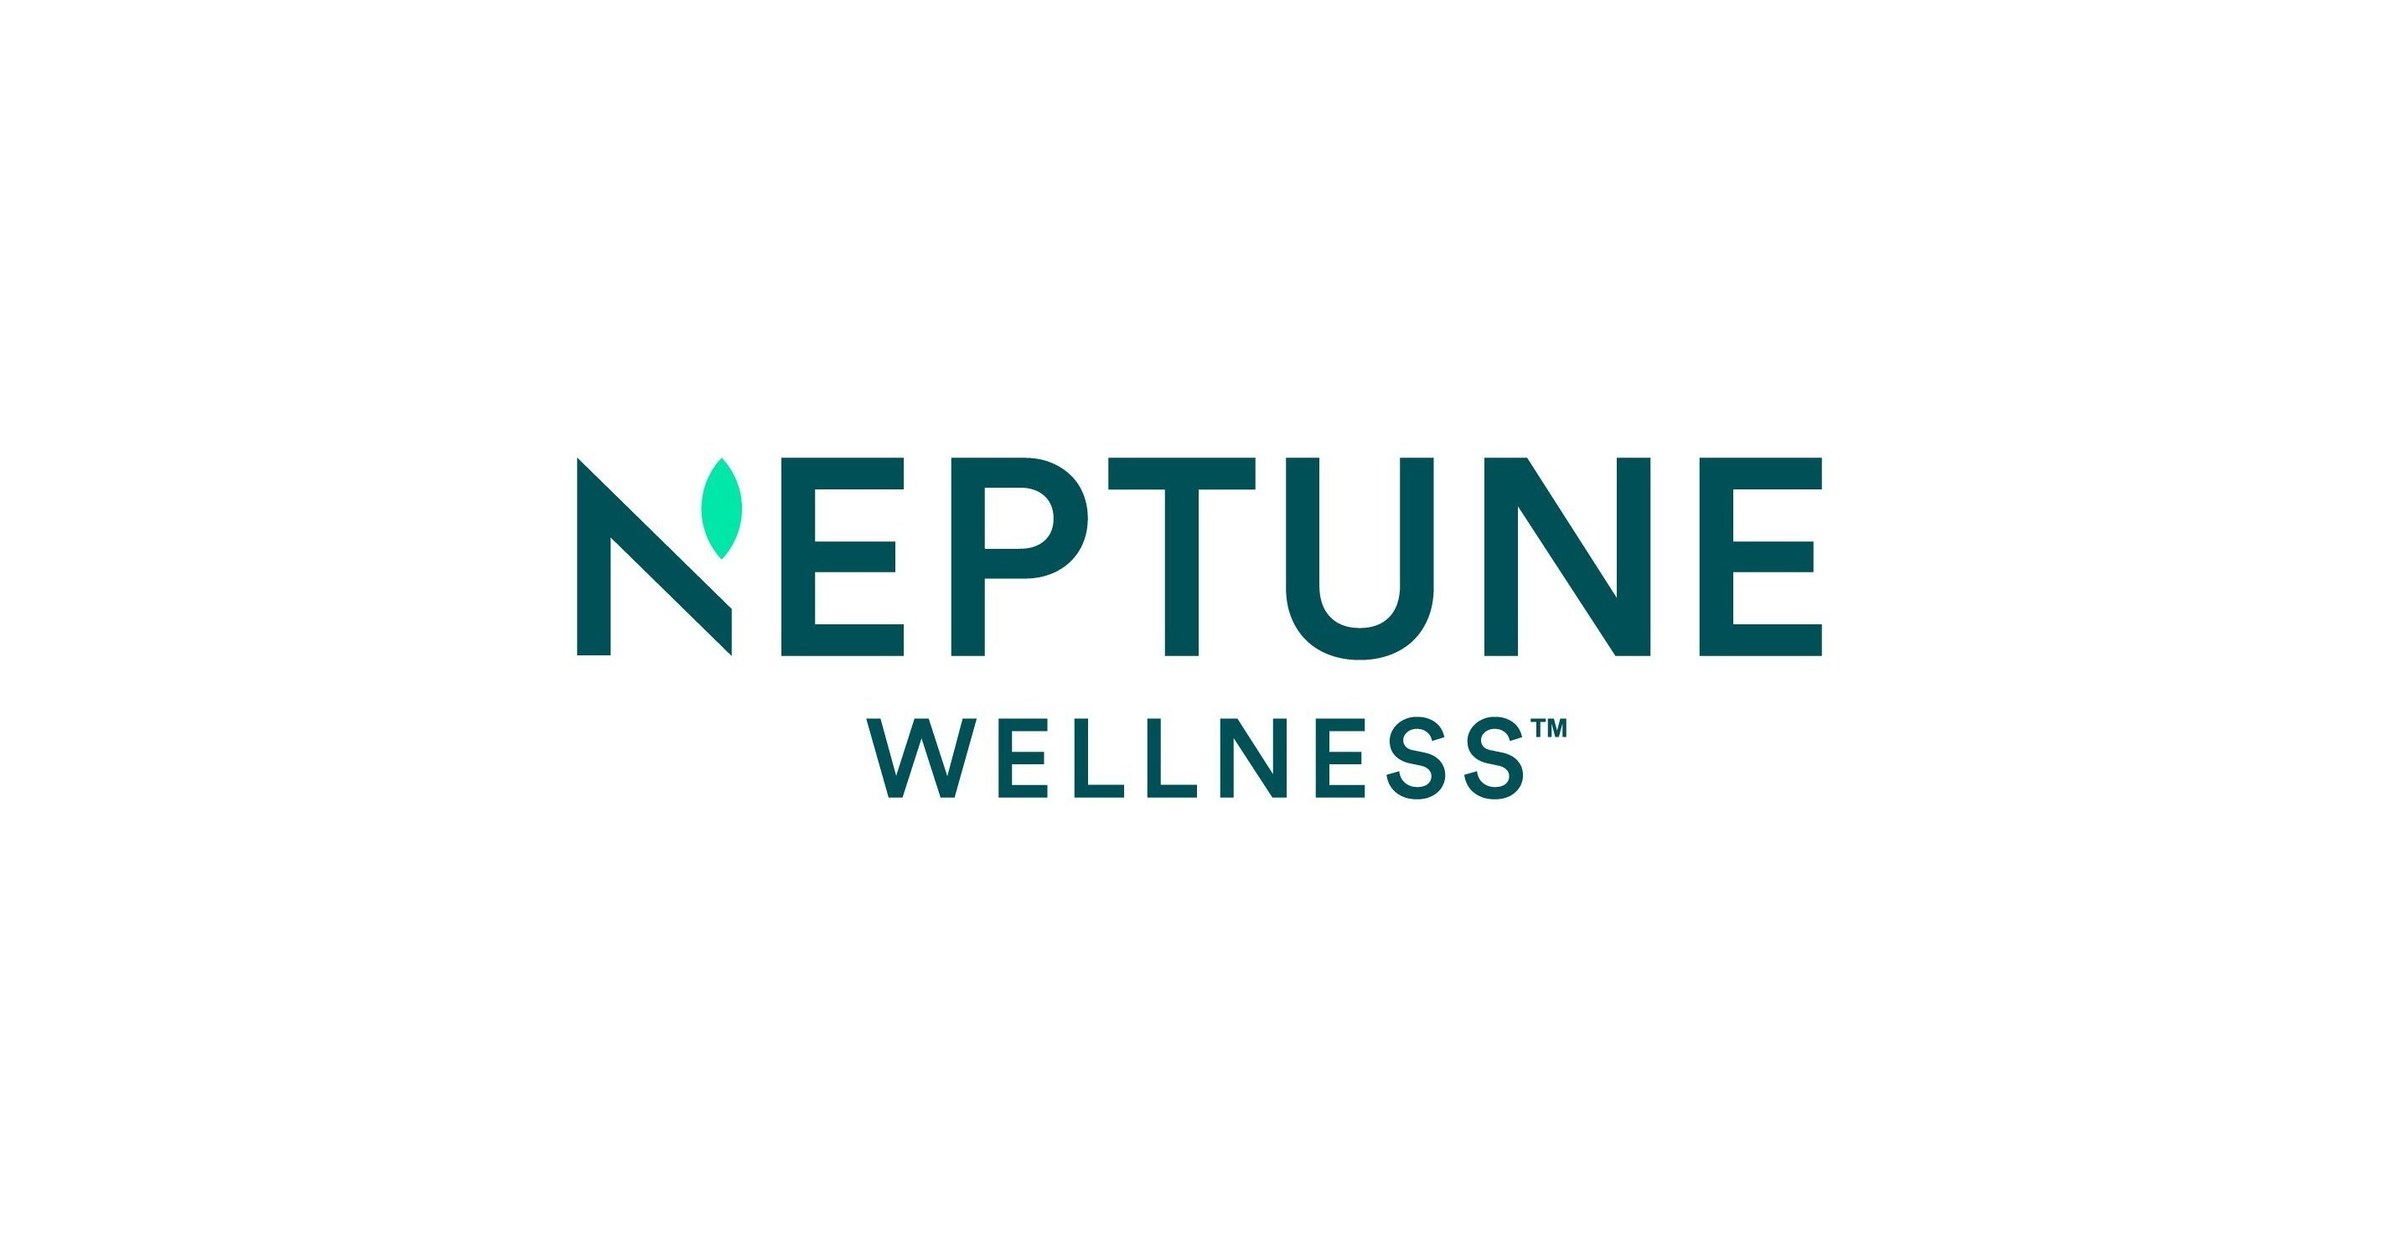 Neptune Wellness Solutions (cannabis Assets)